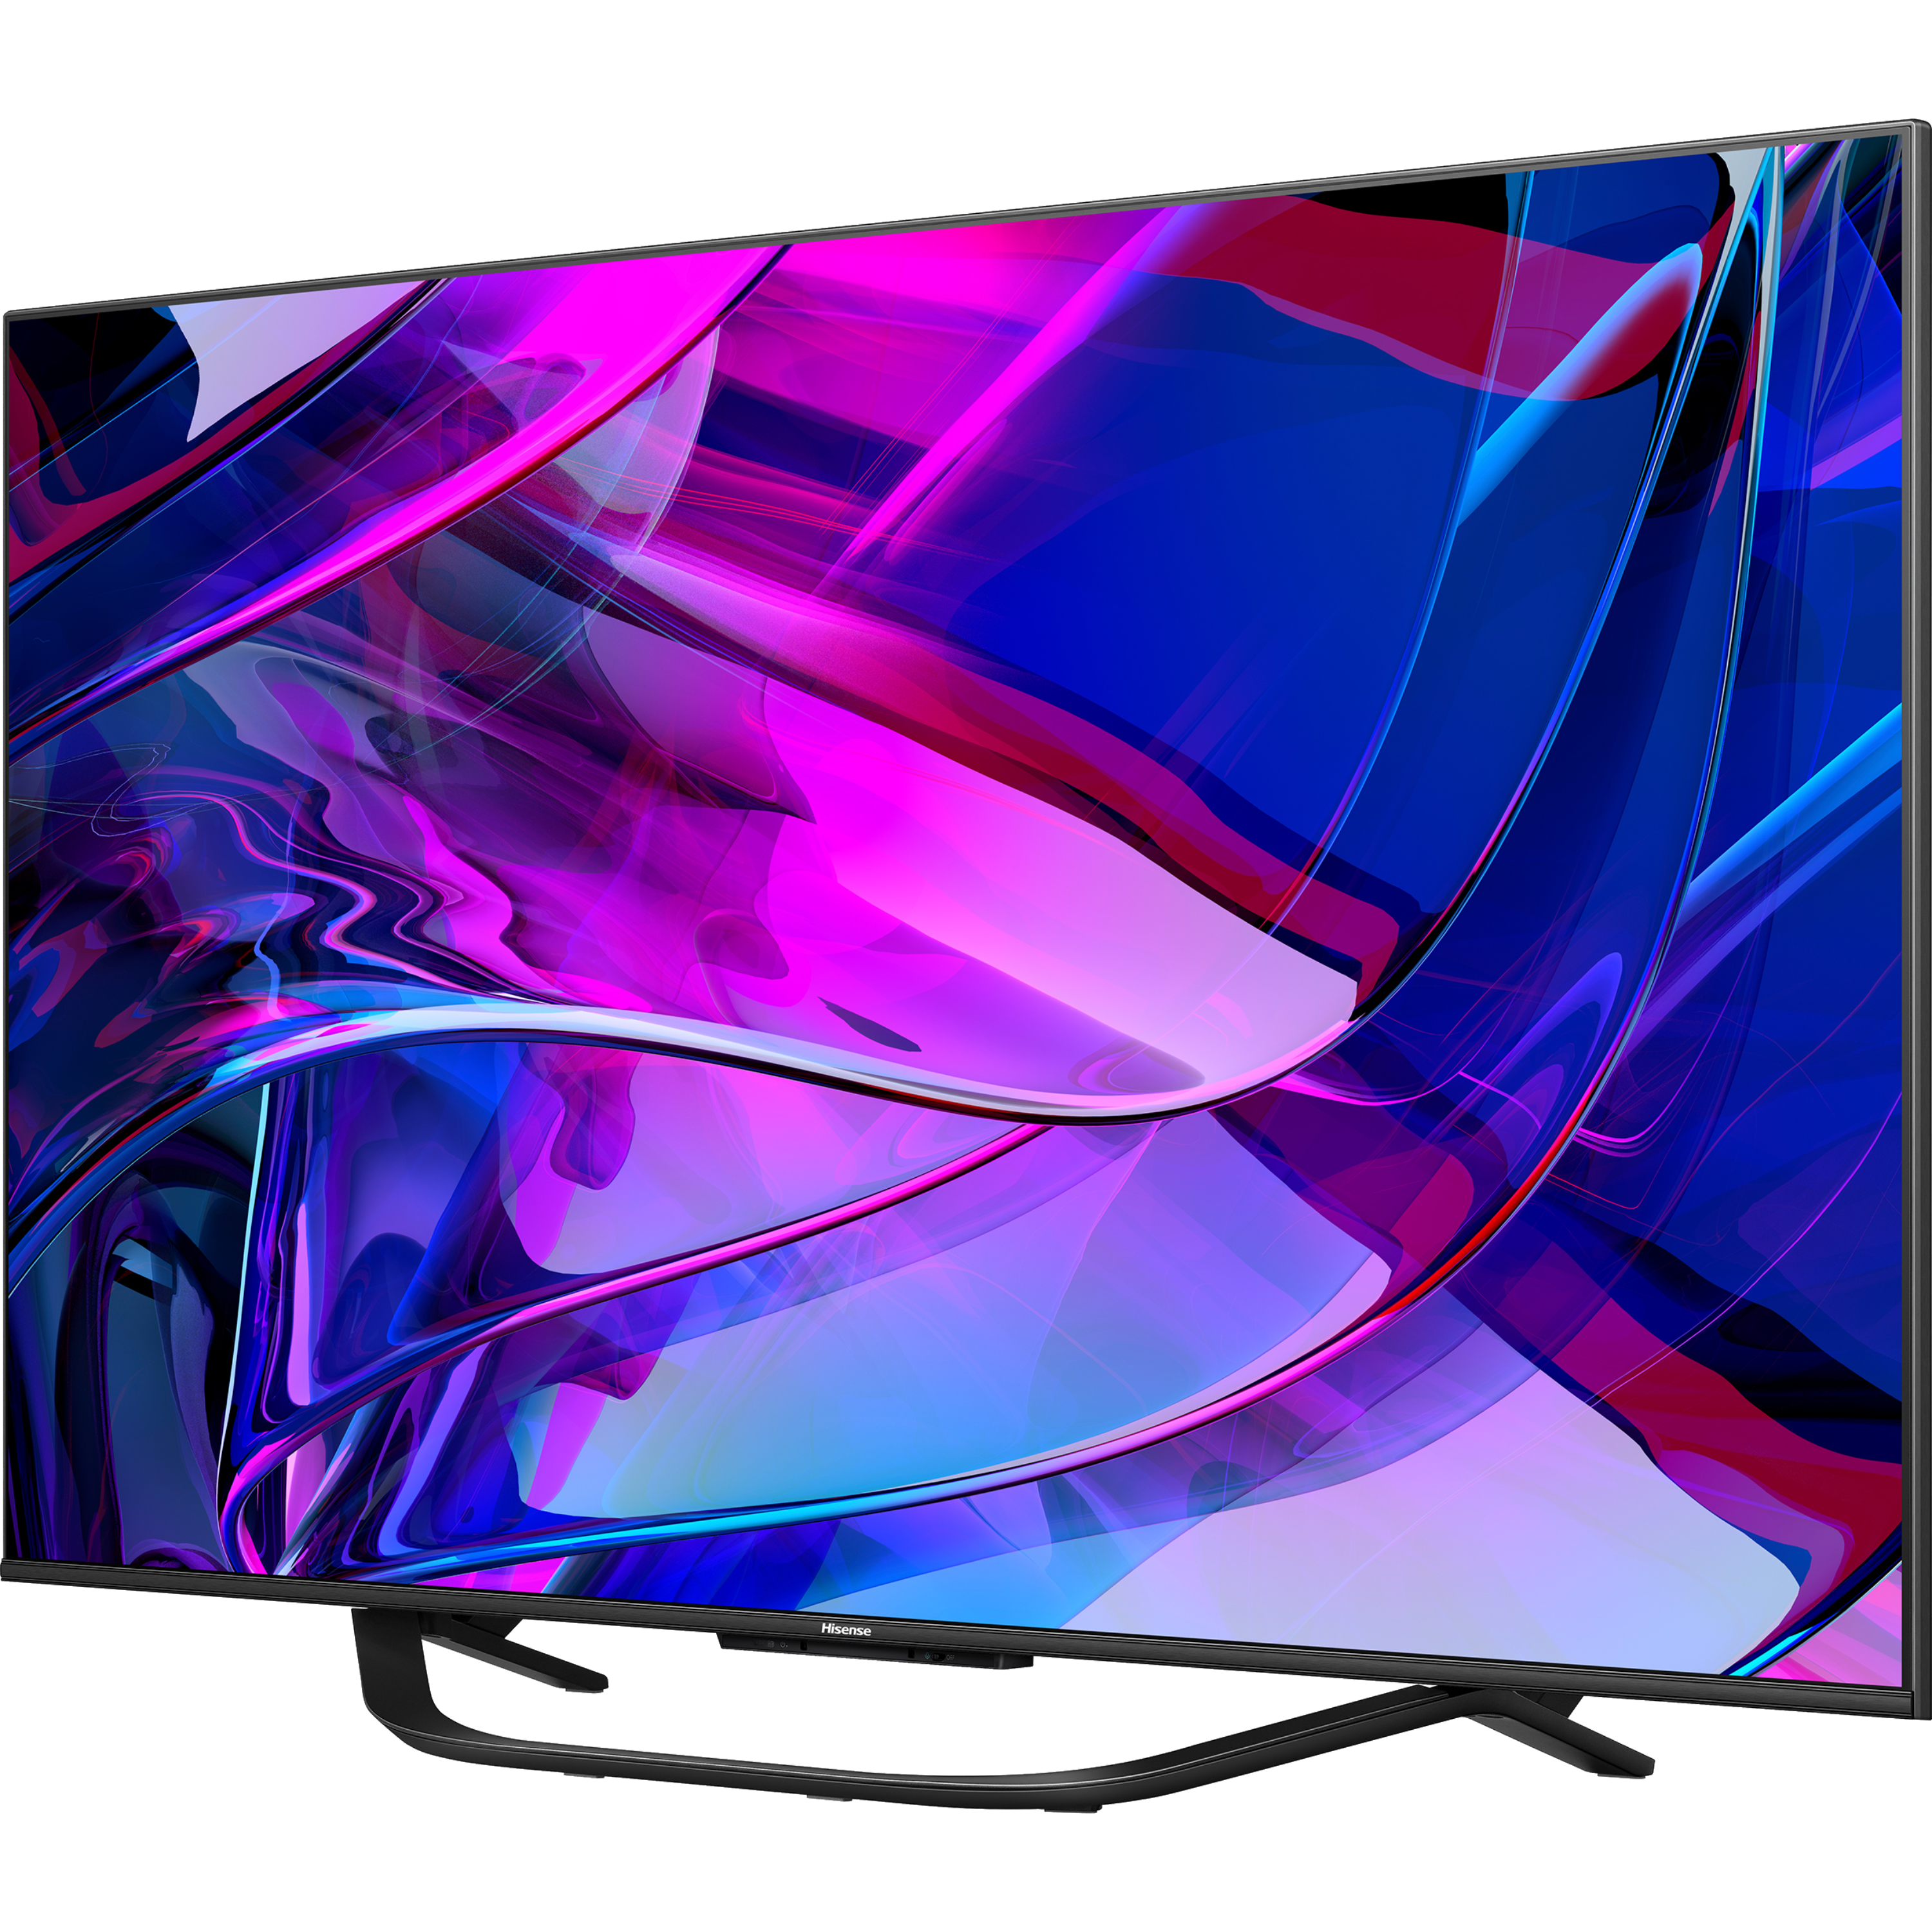 טלוויזיה חכמה 100 אינץ' Hisense 100U7KQ Smart TV 4k Mini Led - שלוש שנים אחריות ע